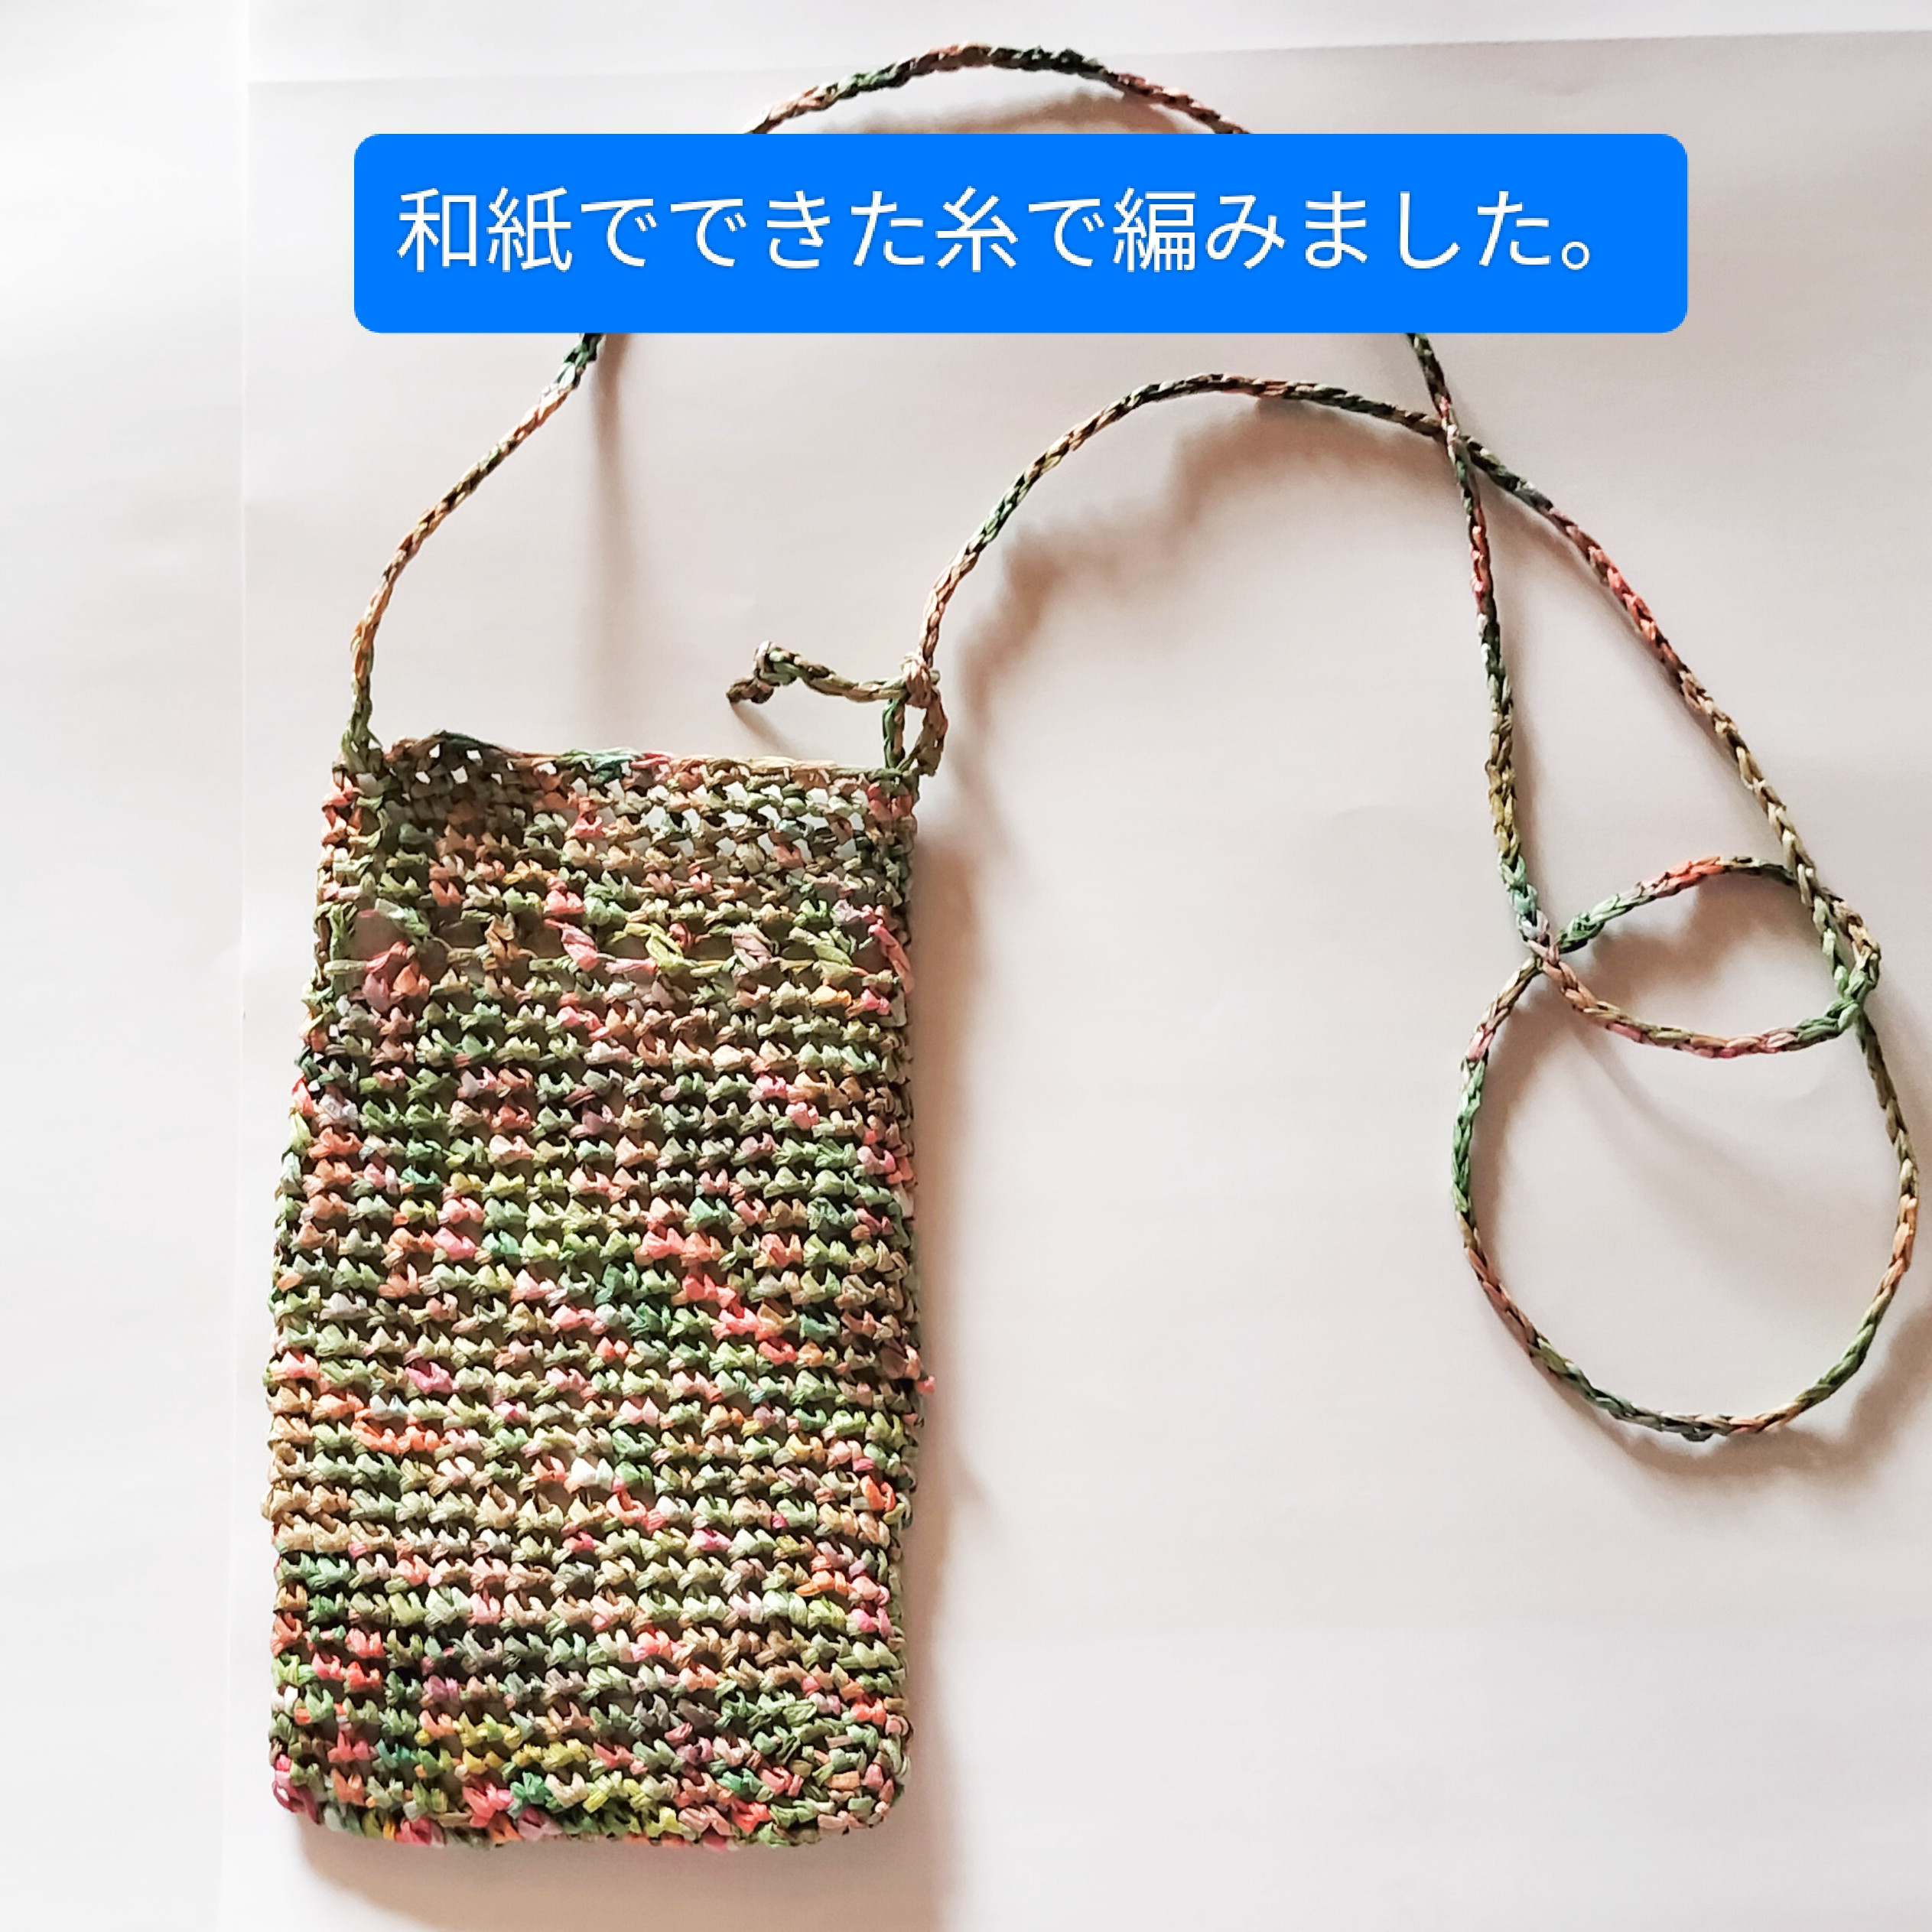 和紙でできた糸で編んだスマホケースです。 本体は縦19、横12cm、紐の